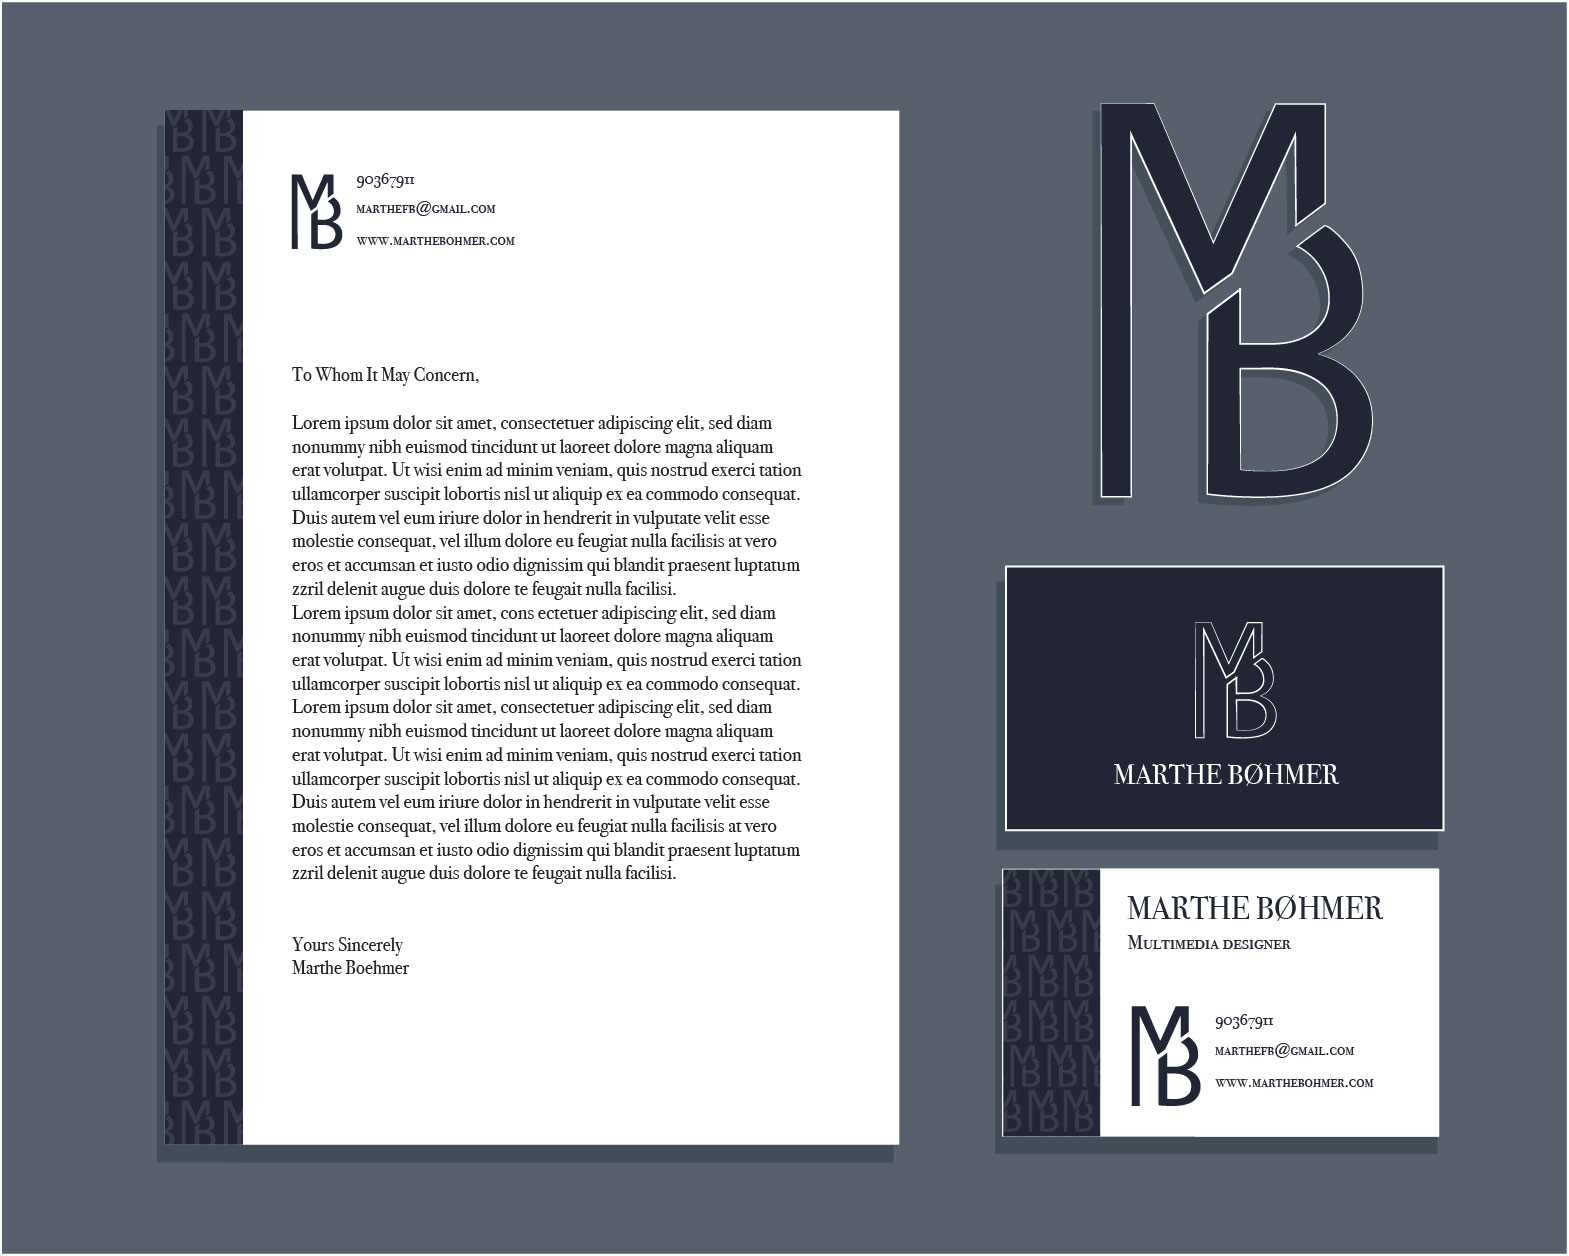 Visuell identitet Marthe Bøhmer med businesscard, dokumentmal og logo